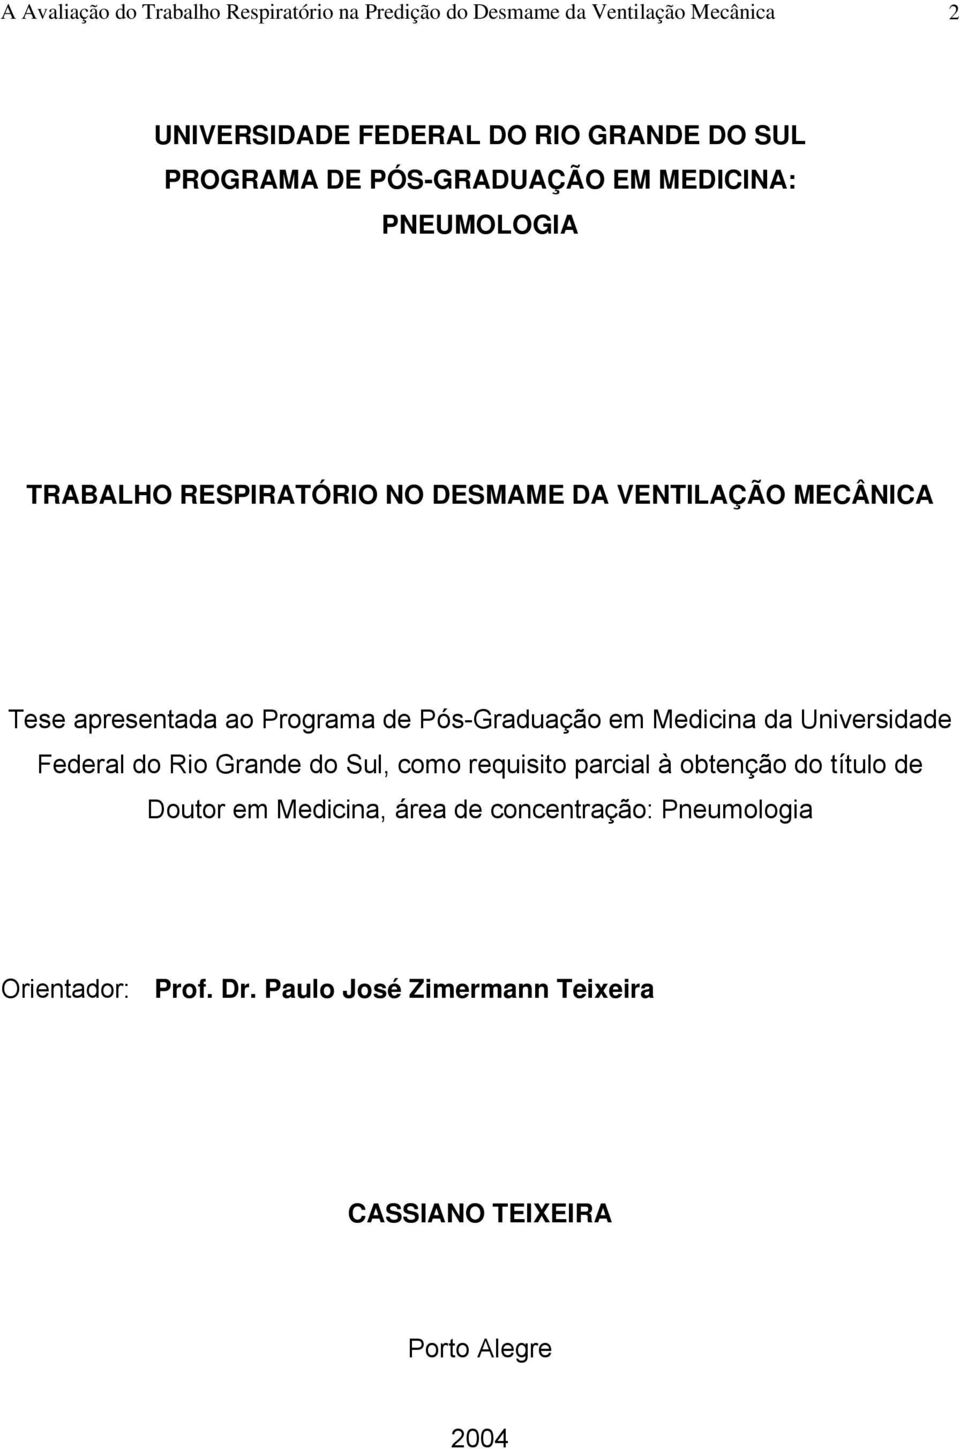 Programa de Pós-Graduação em Medicina da Universidade Federal do Rio Grande do Sul, como requisito parcial à obtenção do título de